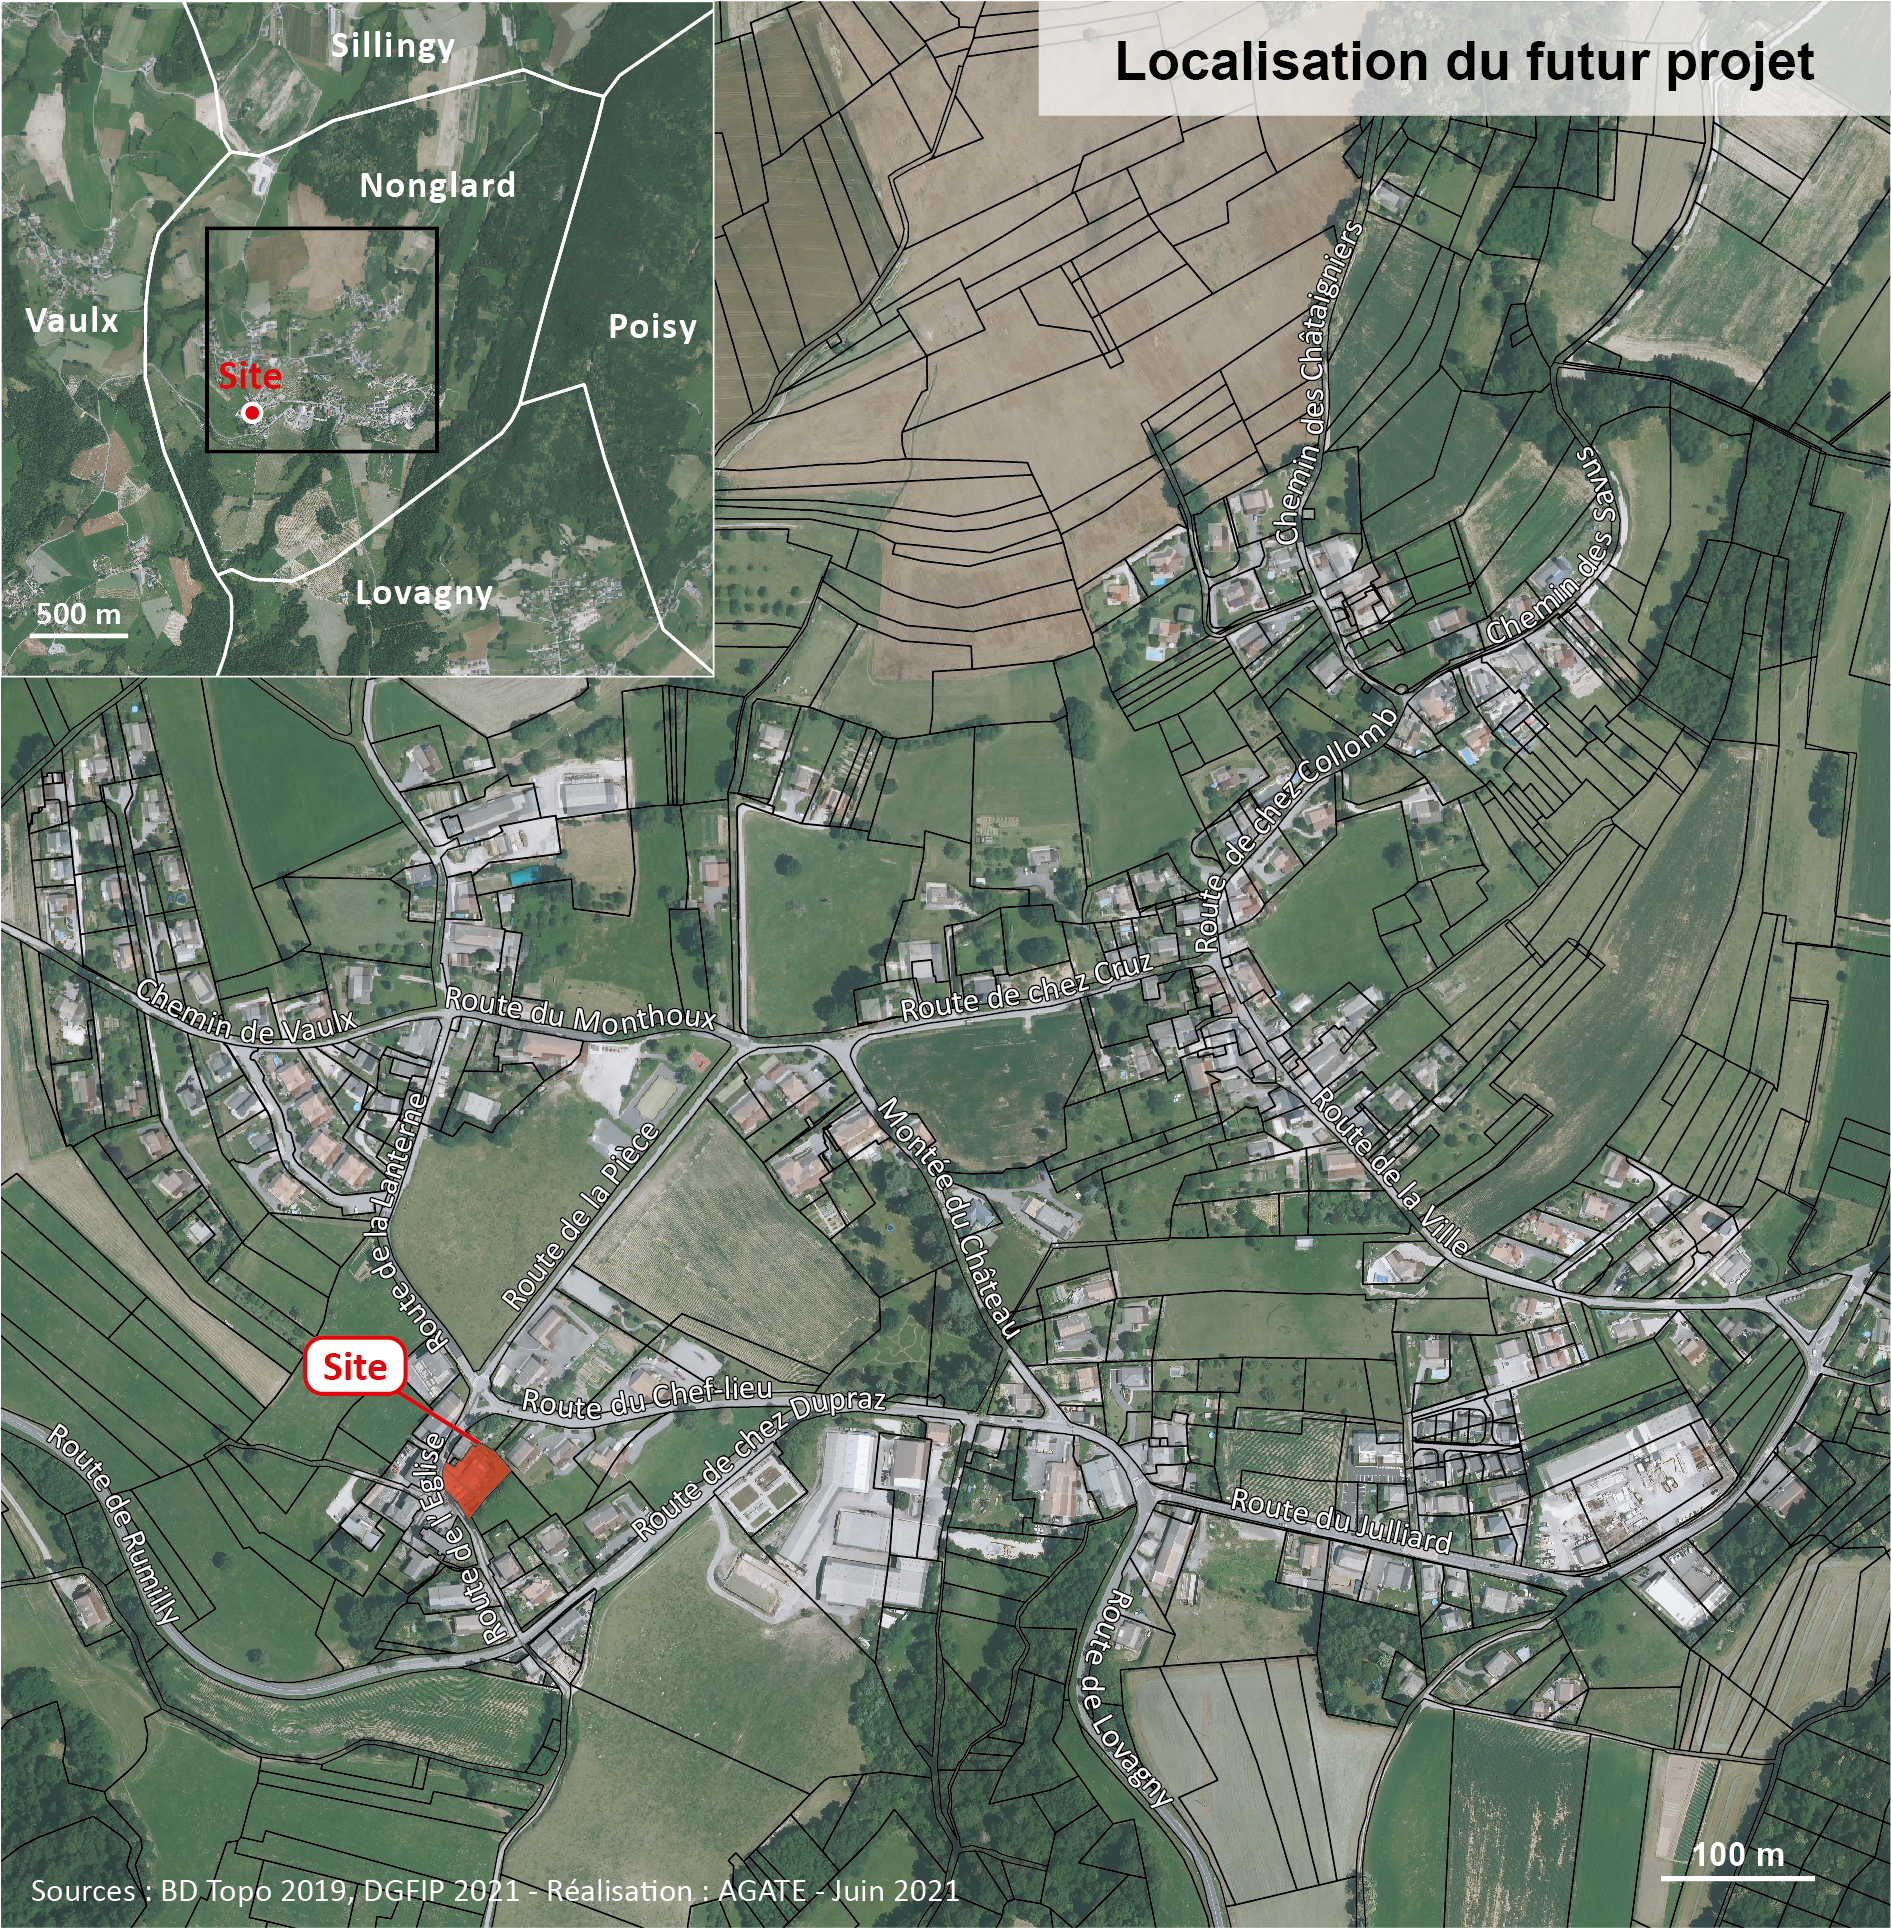 Localisation du site de projet - Nonglard 